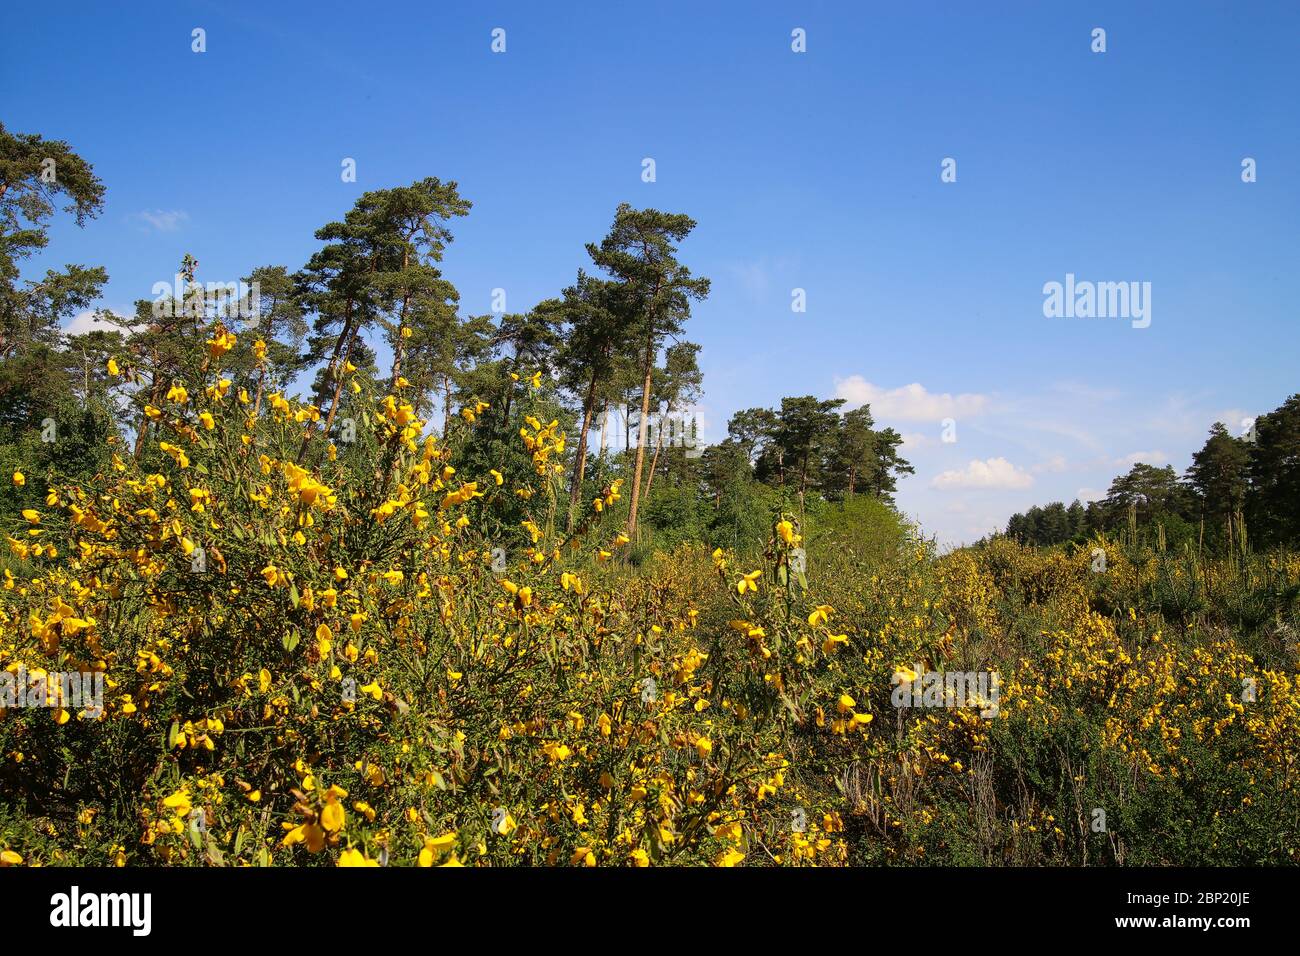 Vue sur les broussailles jaunes (genista pilosa) dans le paysage de la lande hollandaise avec des pins écossais (pinus sylvestris) contre le ciel bleu - Swalmen, N Banque D'Images